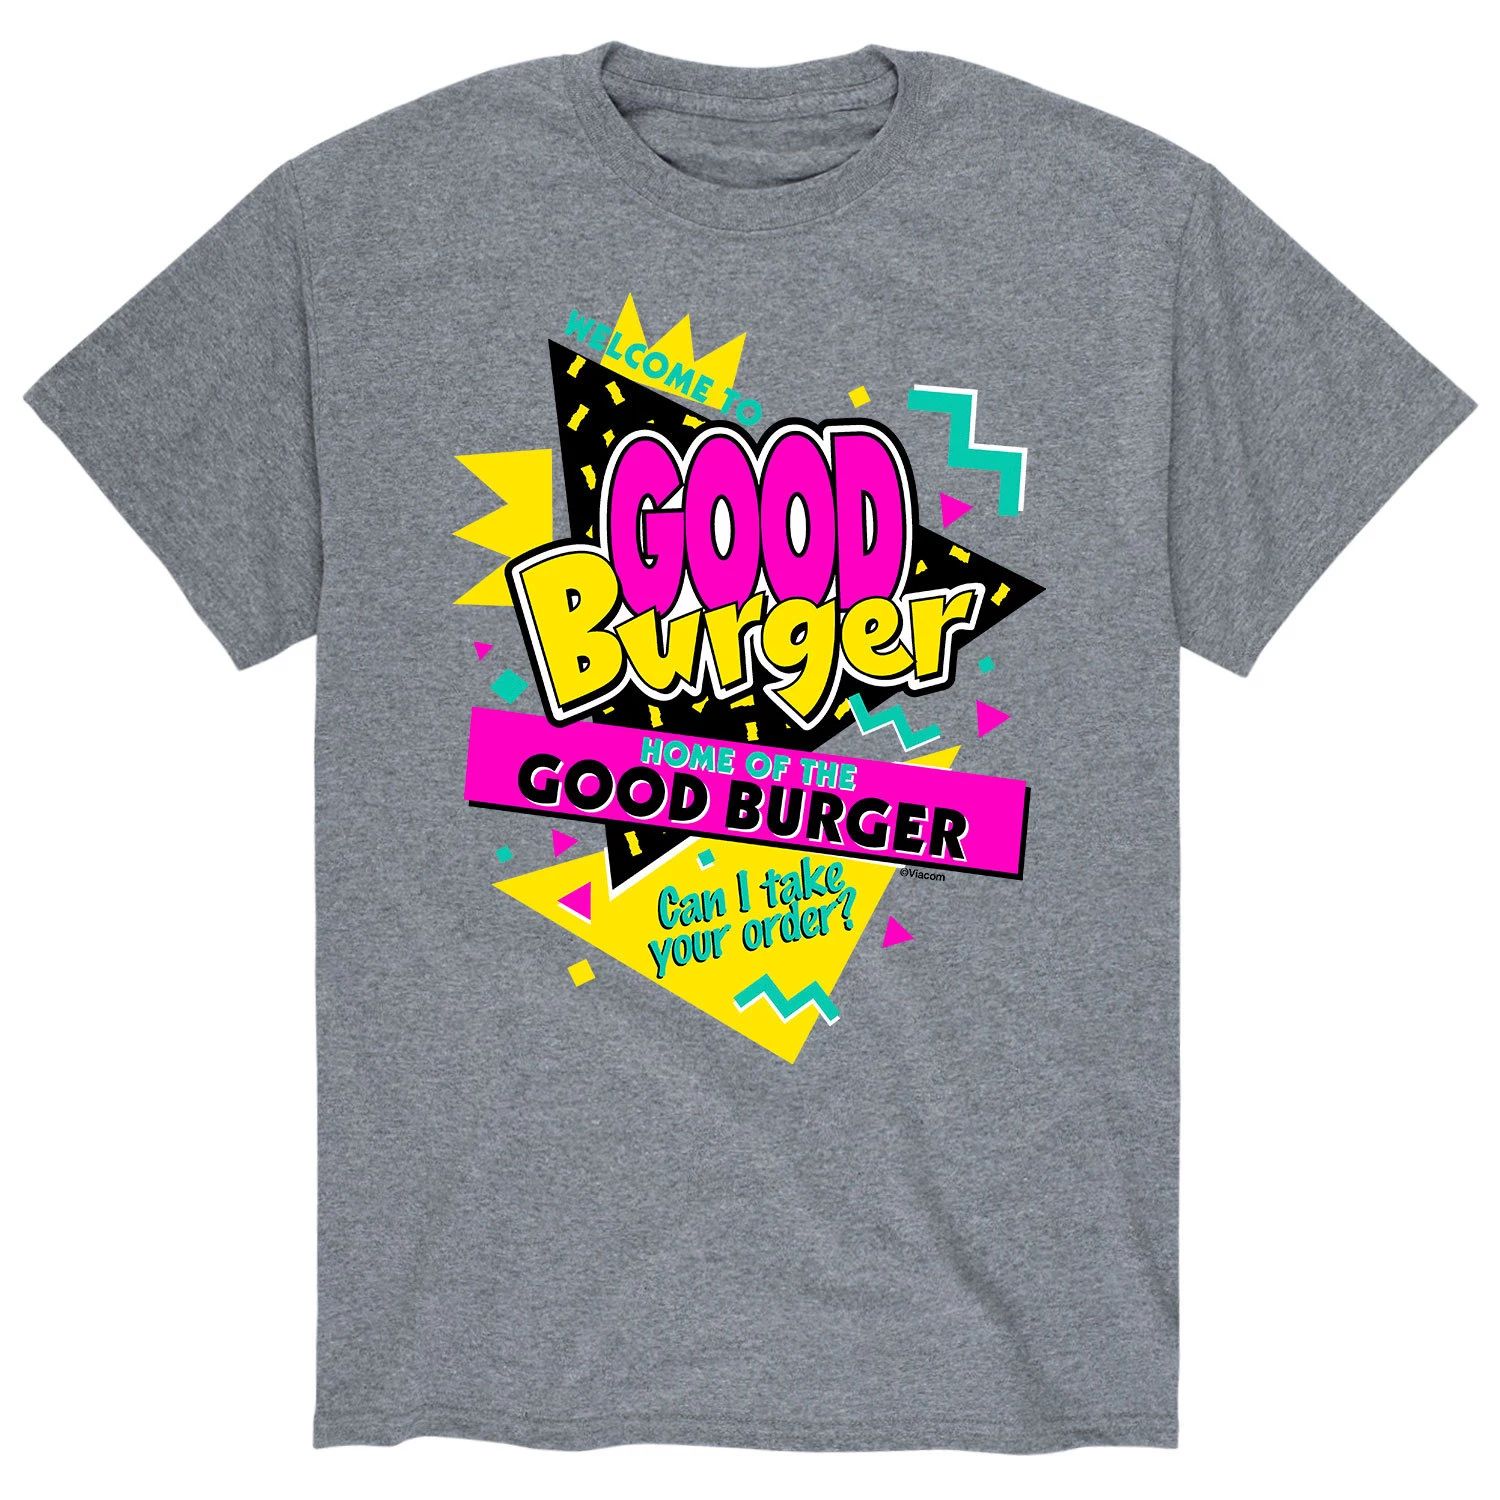 Мужская футболка Good Burger Добро пожаловать в футболку Good Burger! Licensed Character